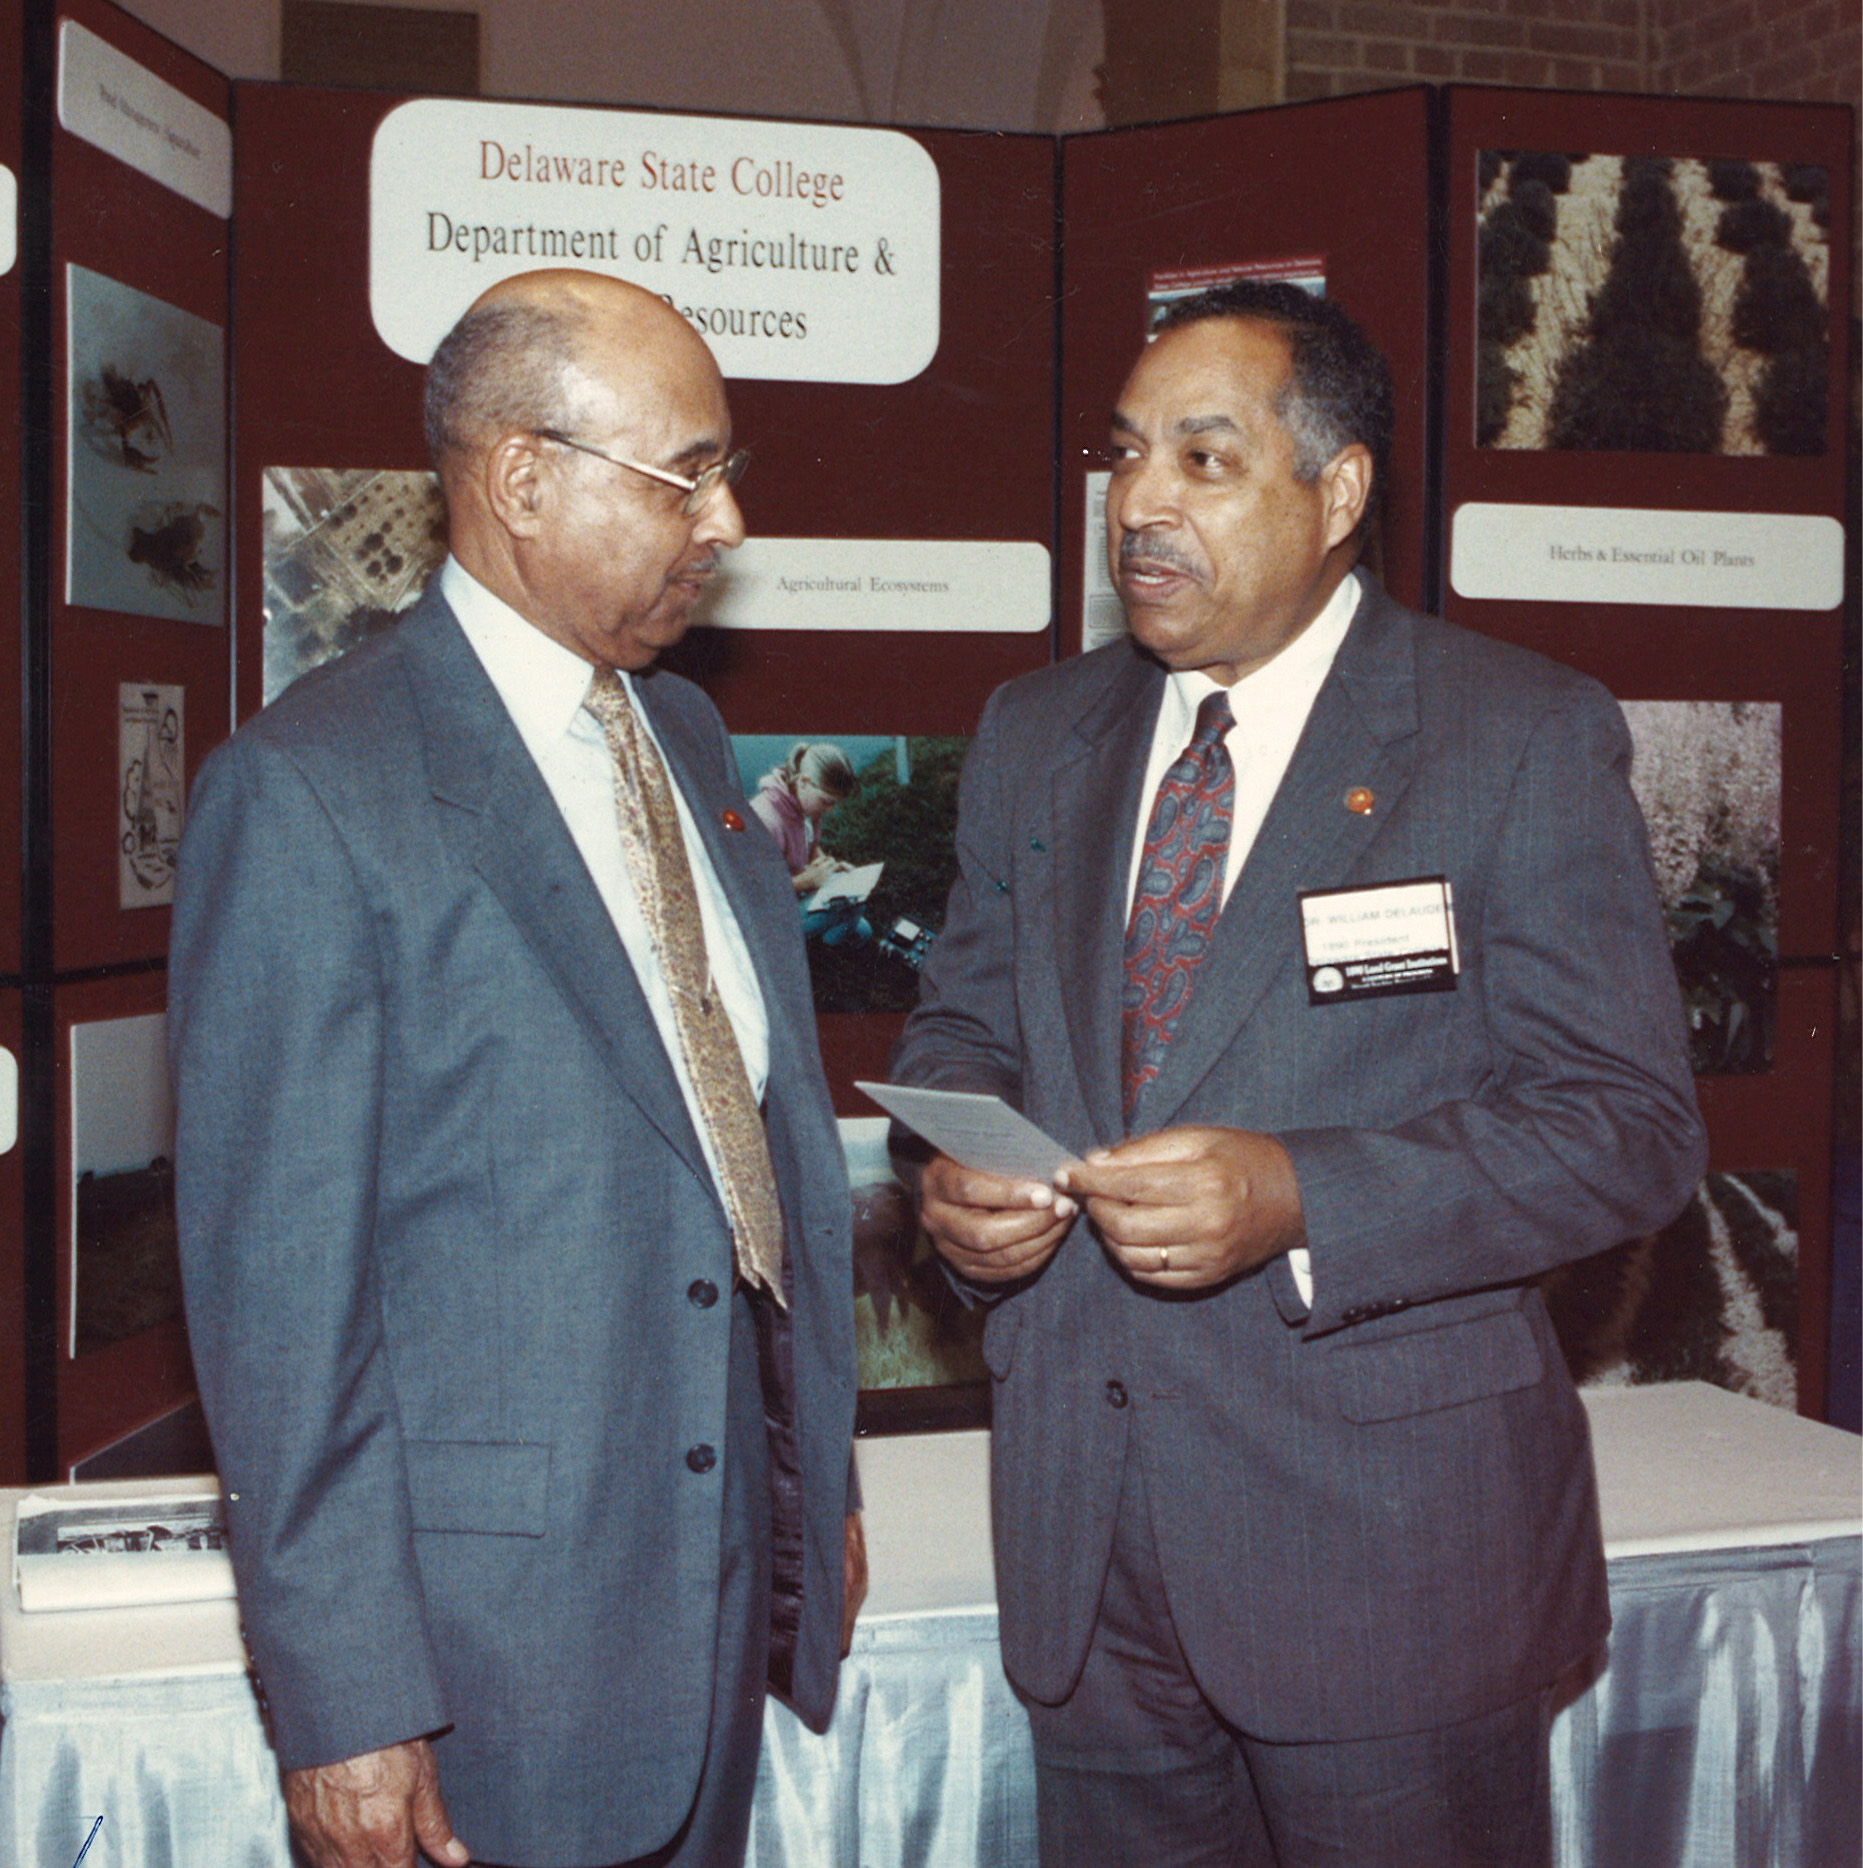 Dr. DeLauder (r) with former Ag program director, Dr. Ulysses S. Washington.